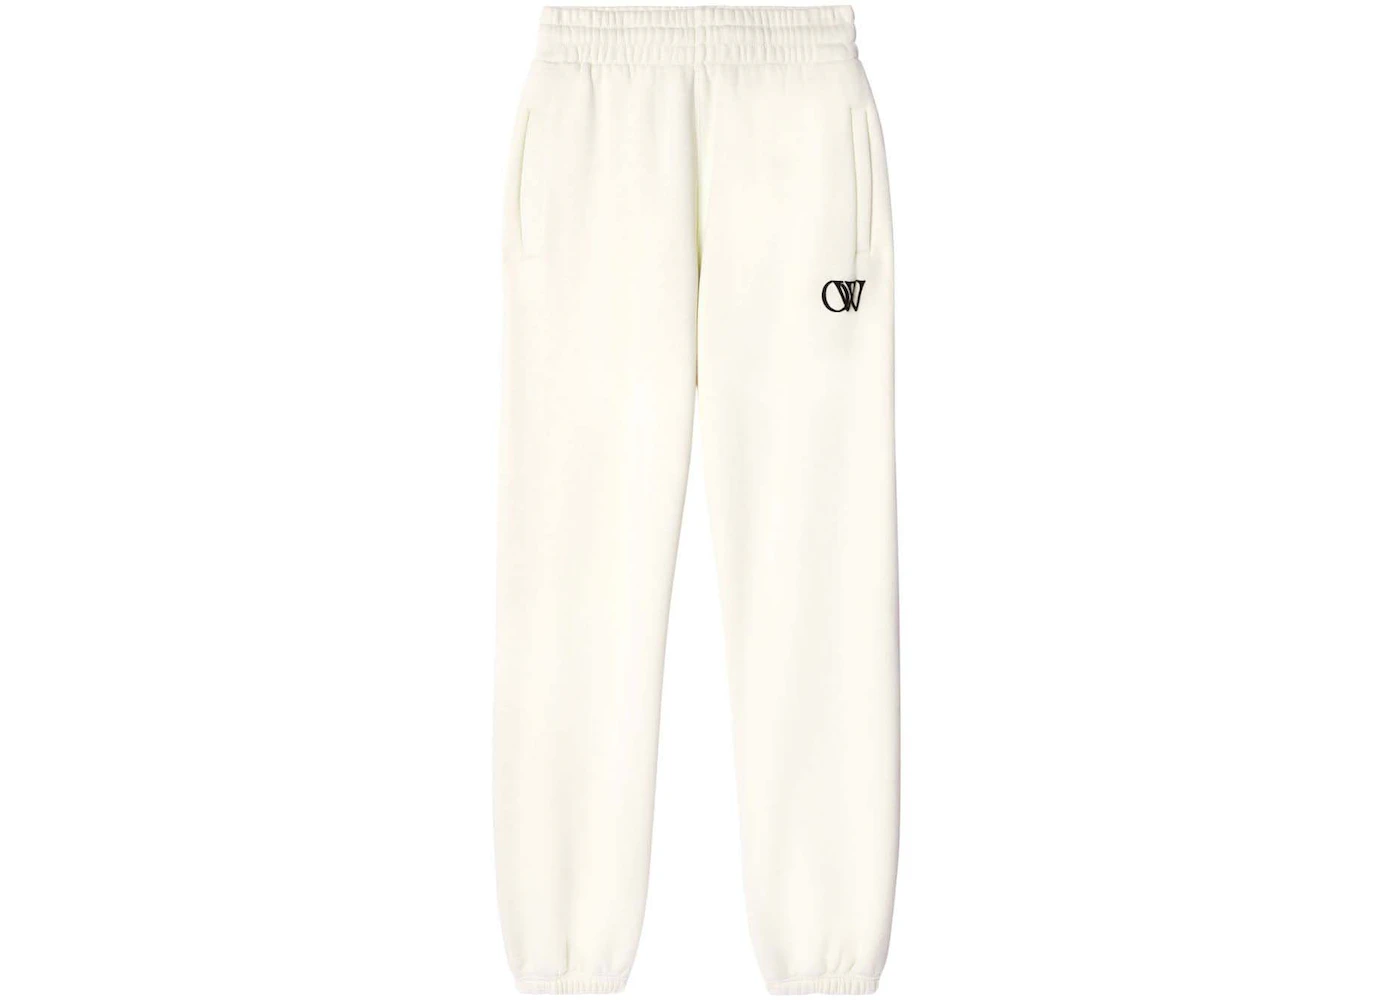 OFF-WHITE OW-Print Cotton Track Pants Cream White - FW23 - US